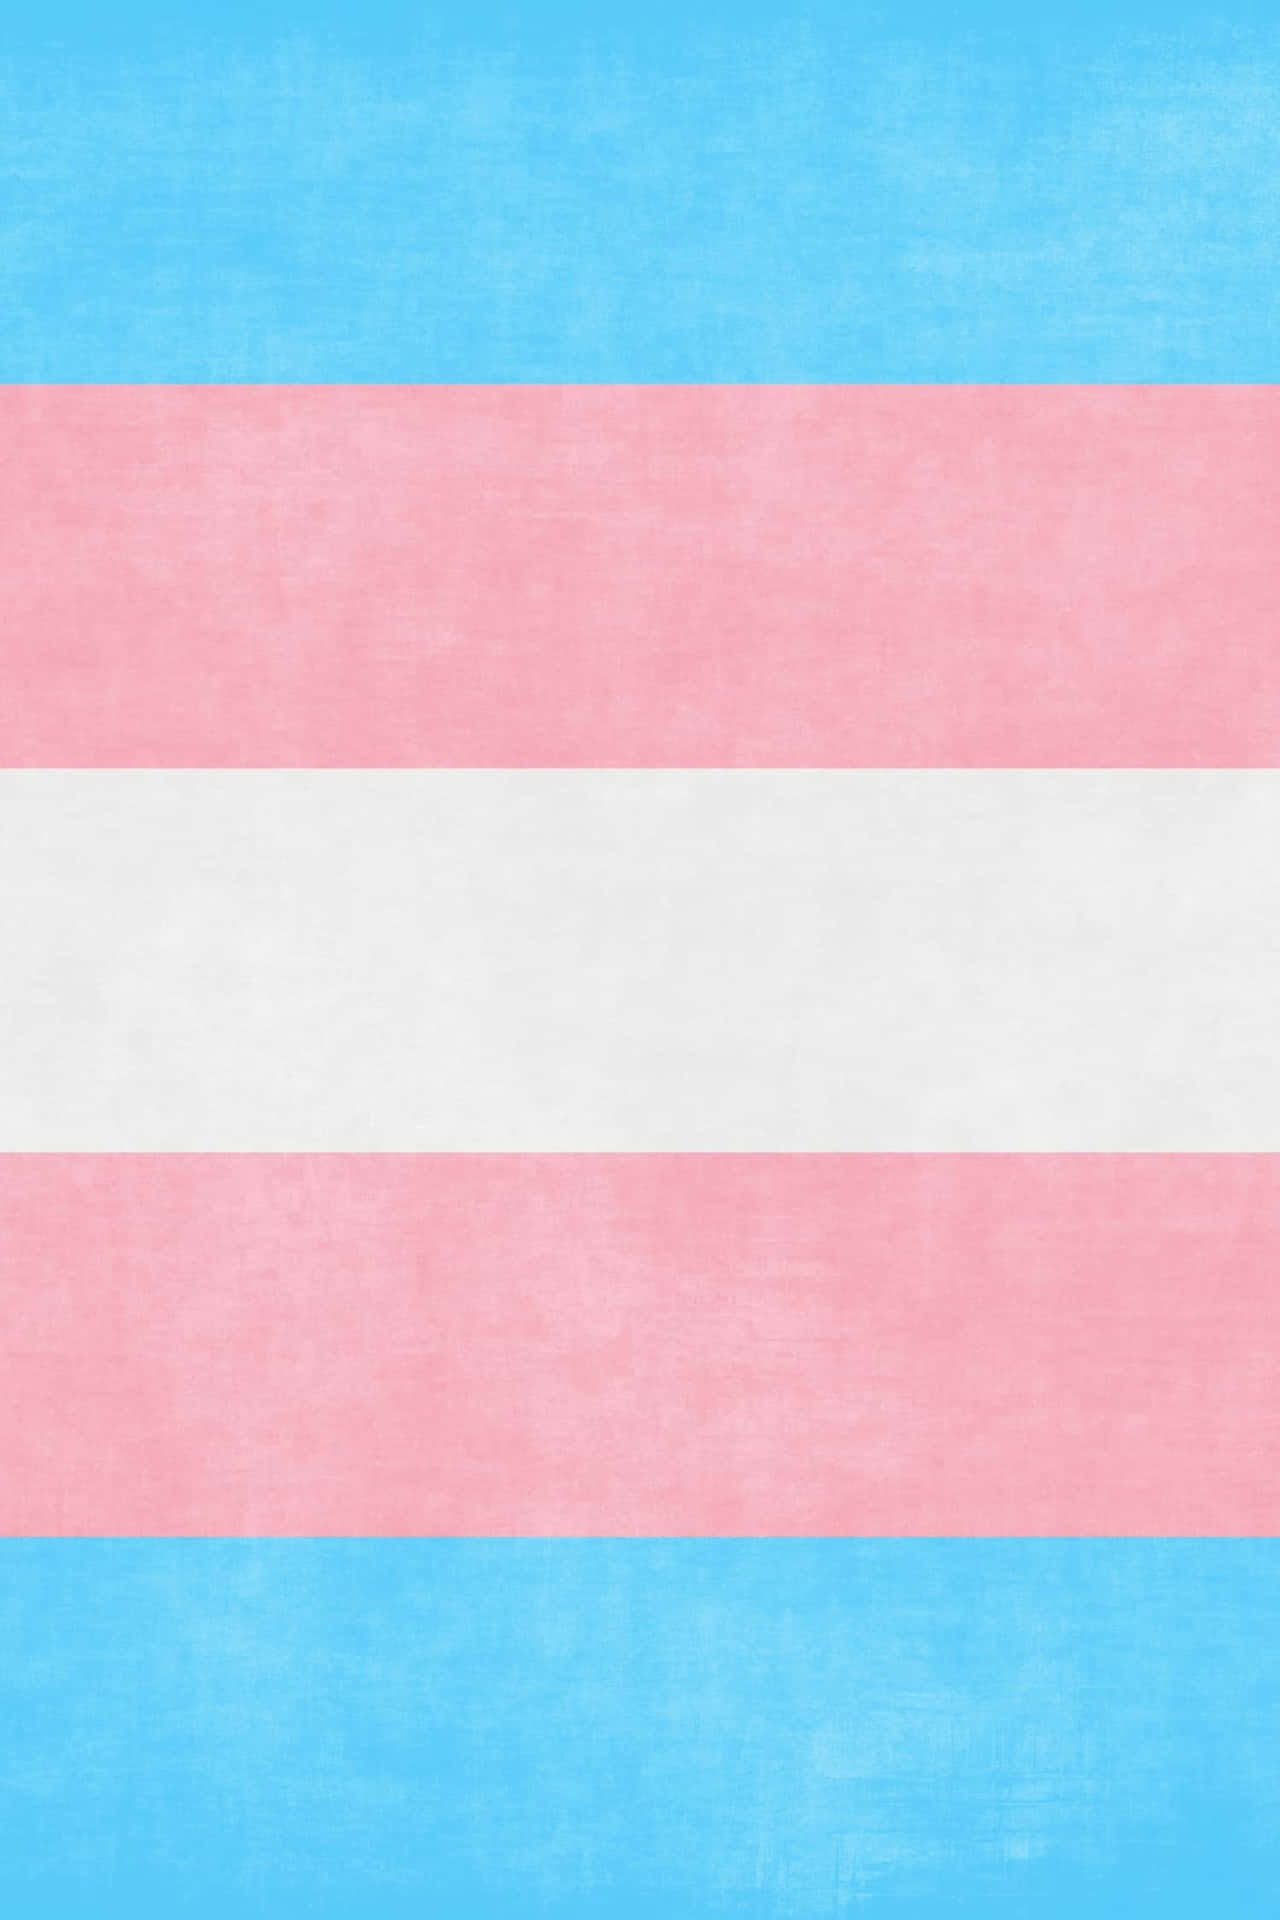 Transgender Flag On A Blue Background Wallpaper